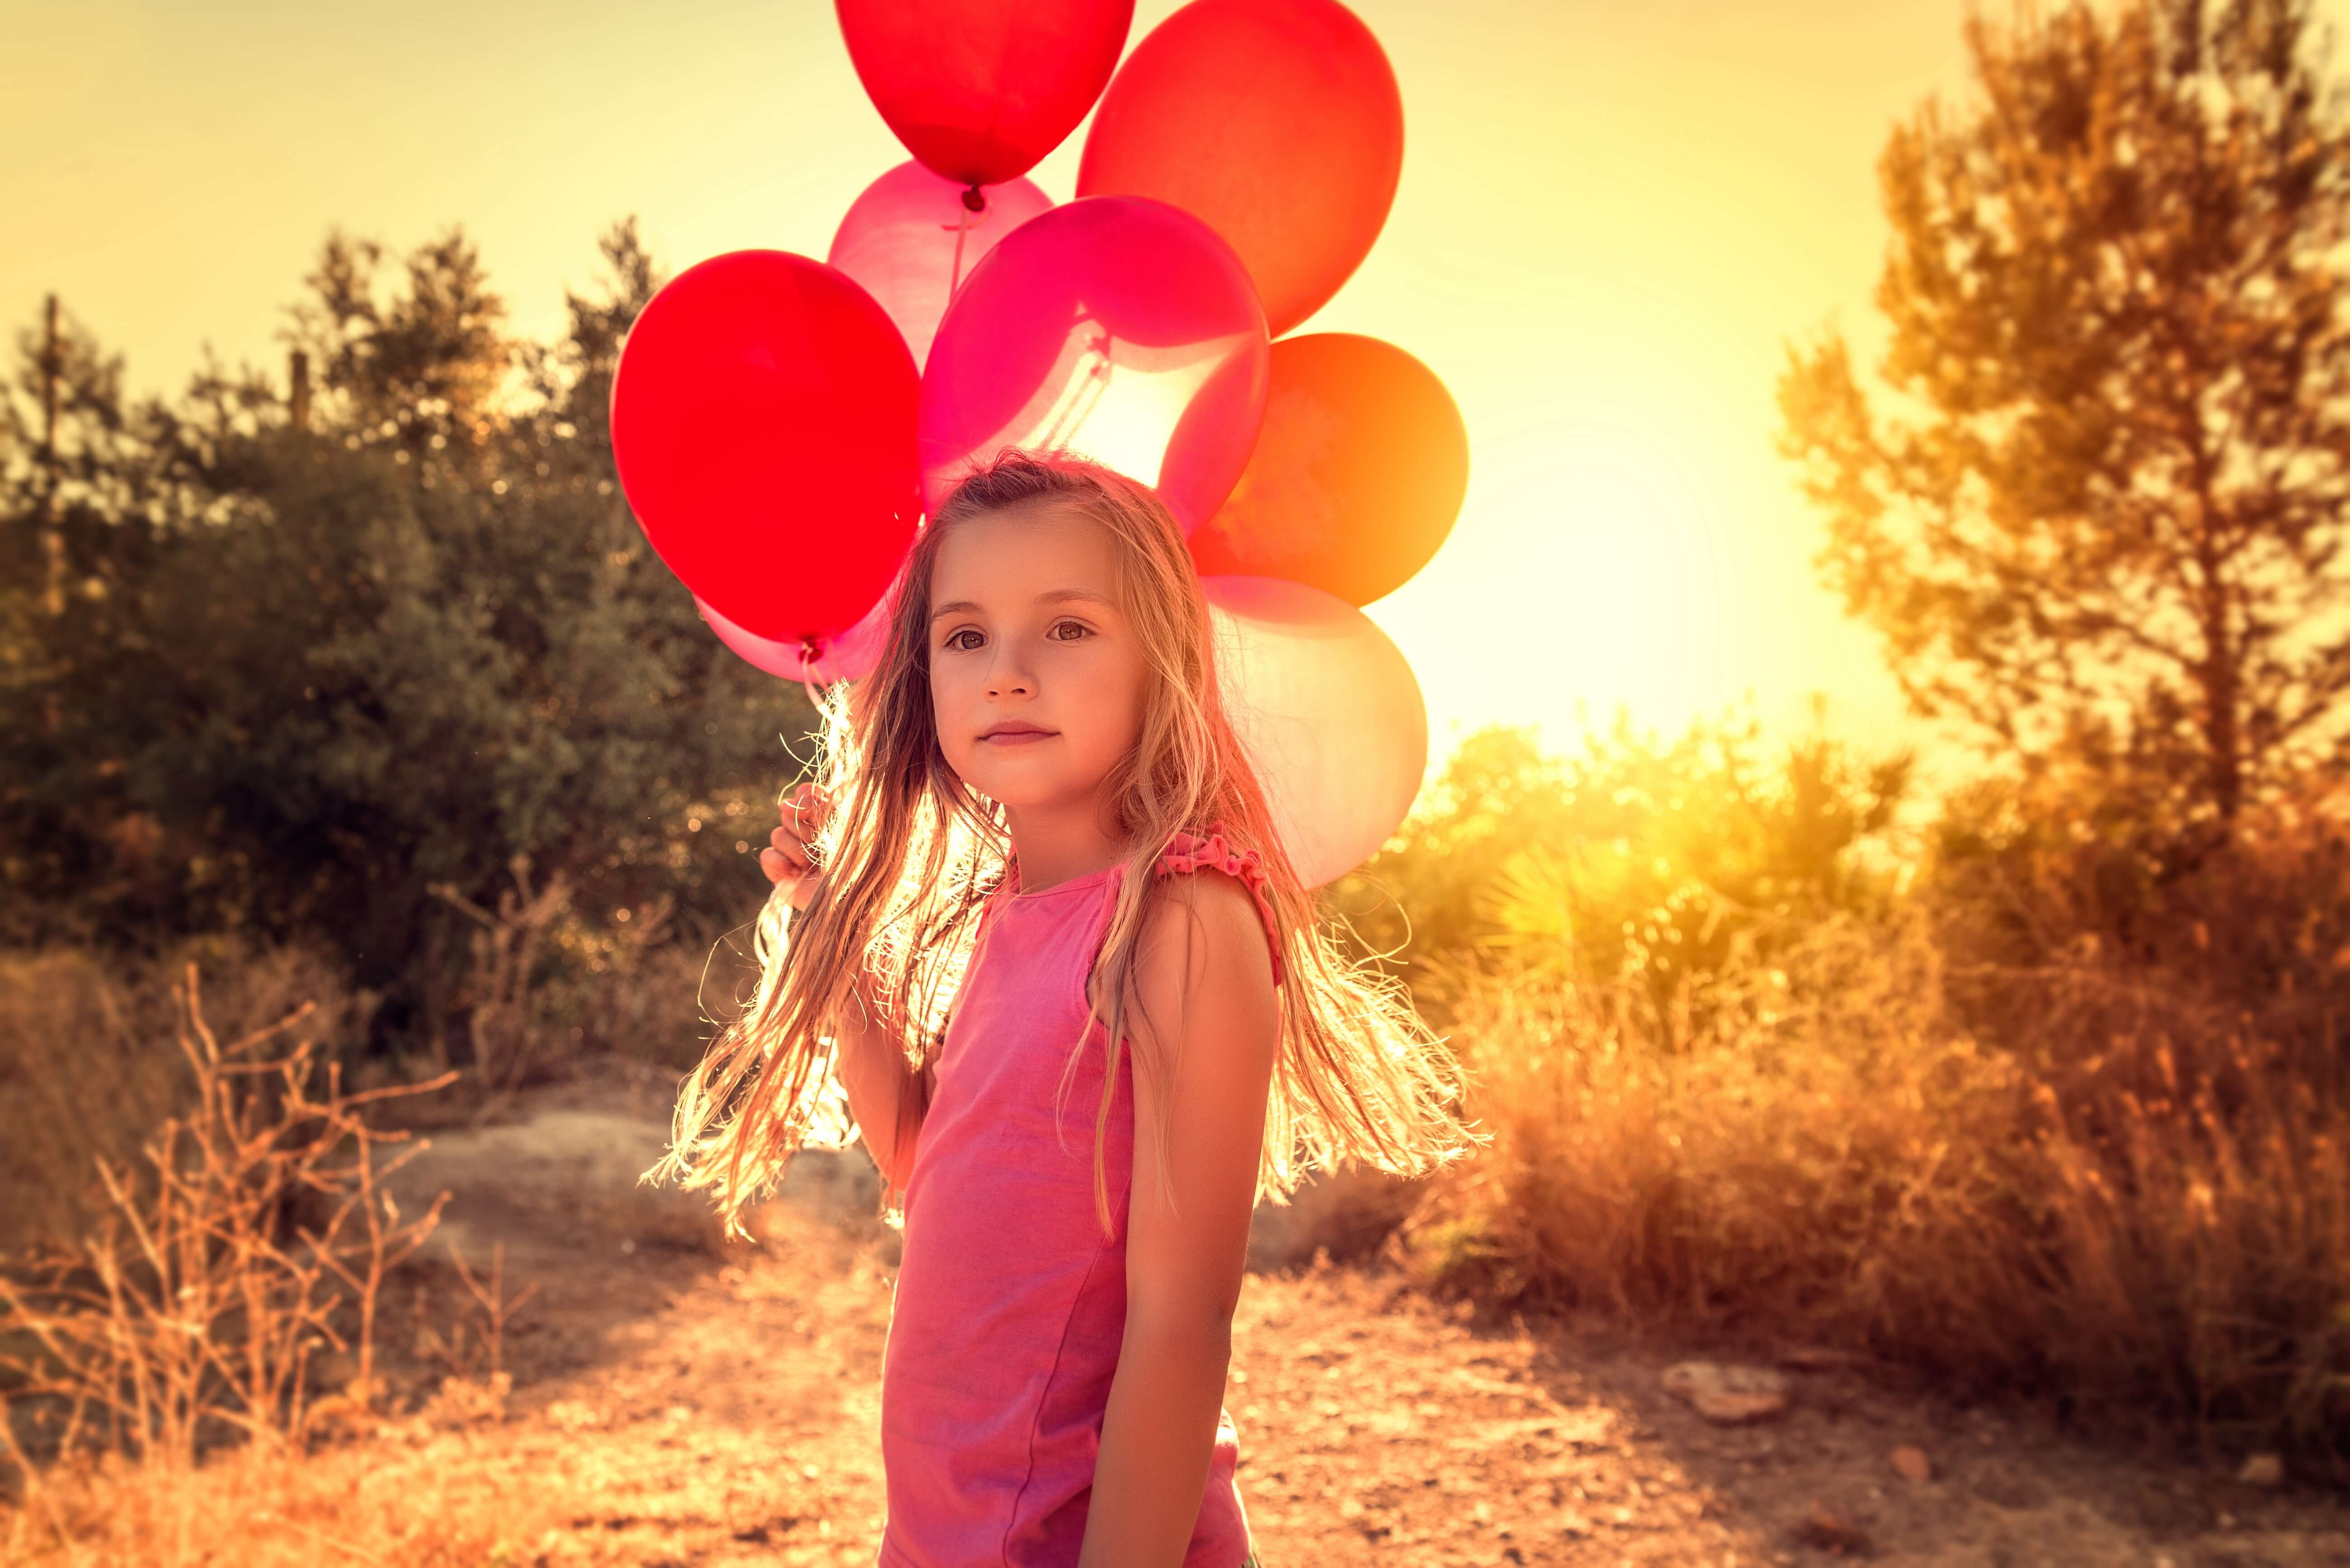 Mädchen mit Luftballons in der Hand im Sonnenschein